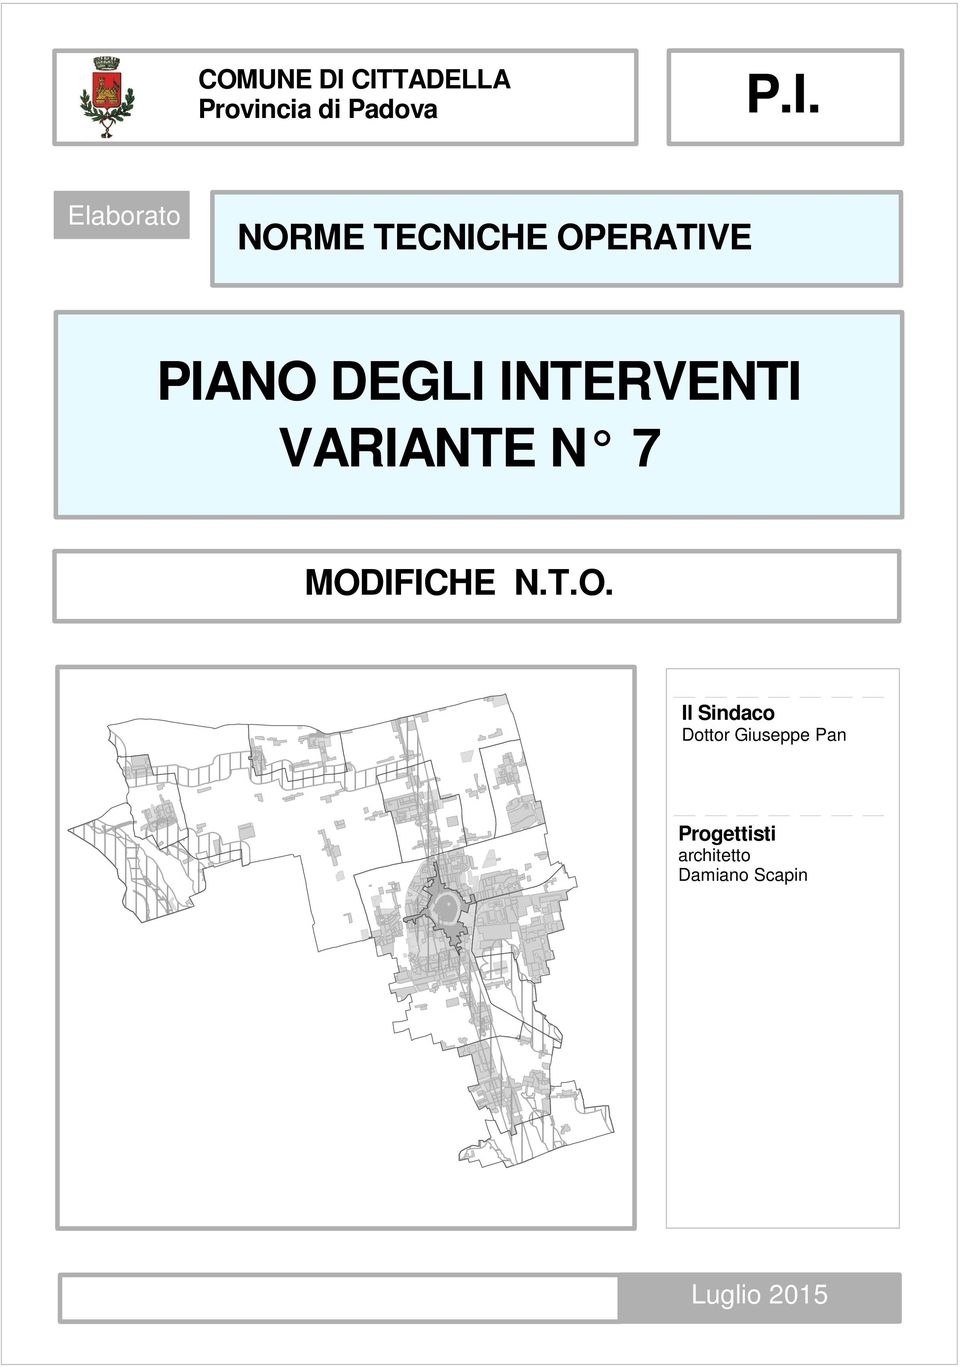 TECNICHE OPERATIVE PIANO DEGLI INTERVENTI VARIANTE N